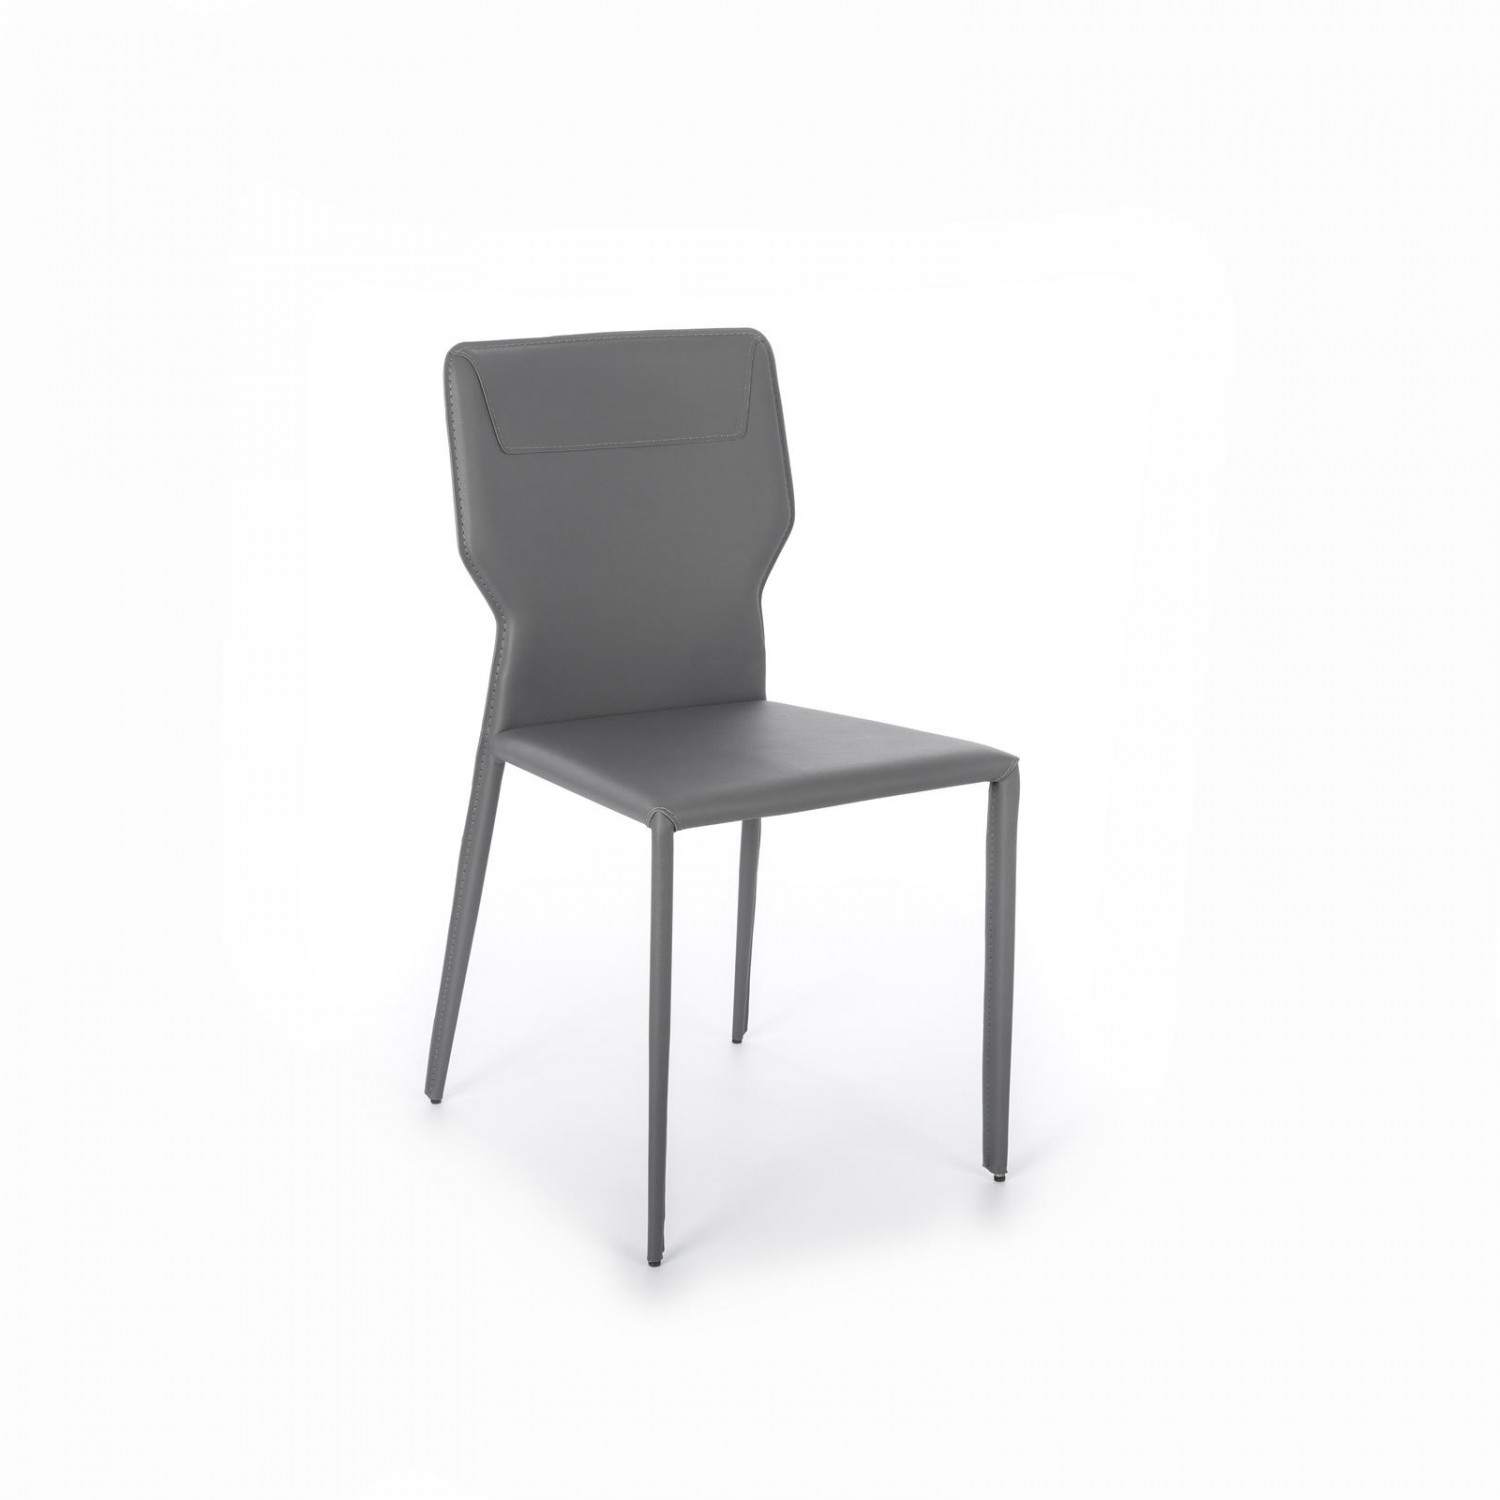 design twist sedia in similcuoio kim - set da 2